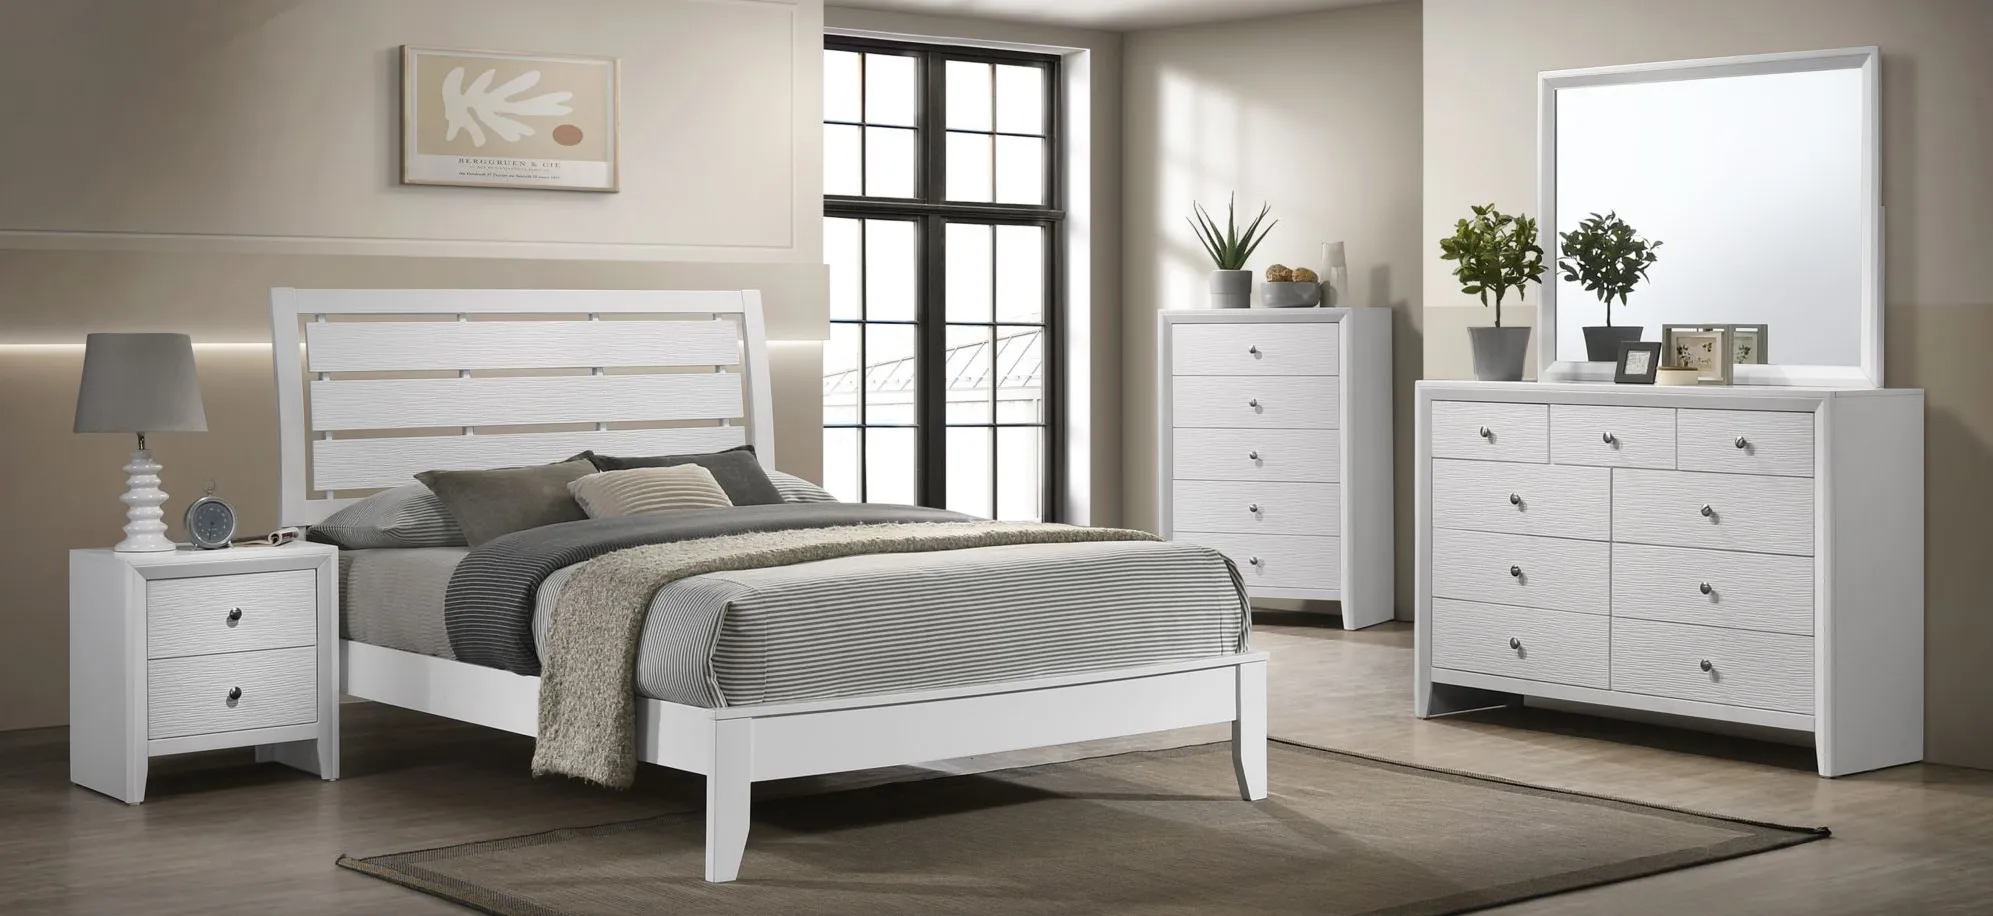 Evan 5-Pc Full Bedroom Set in White by Crown Mark